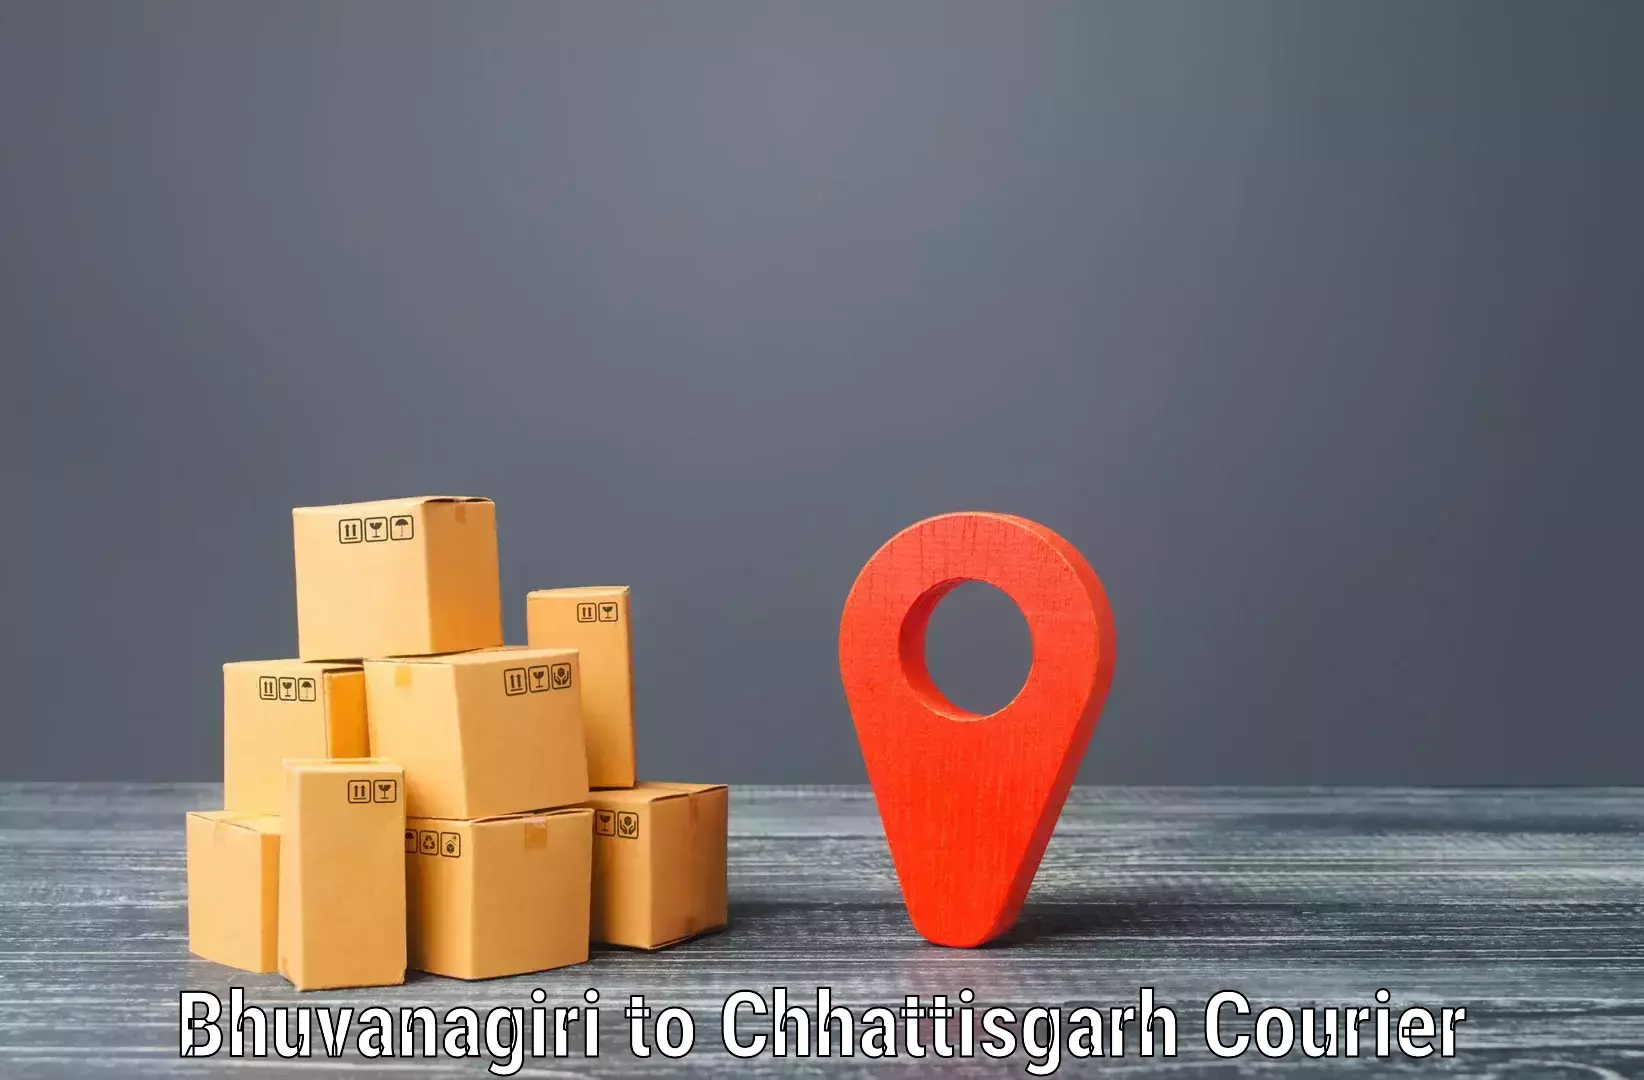 24/7 courier service Bhuvanagiri to Berla